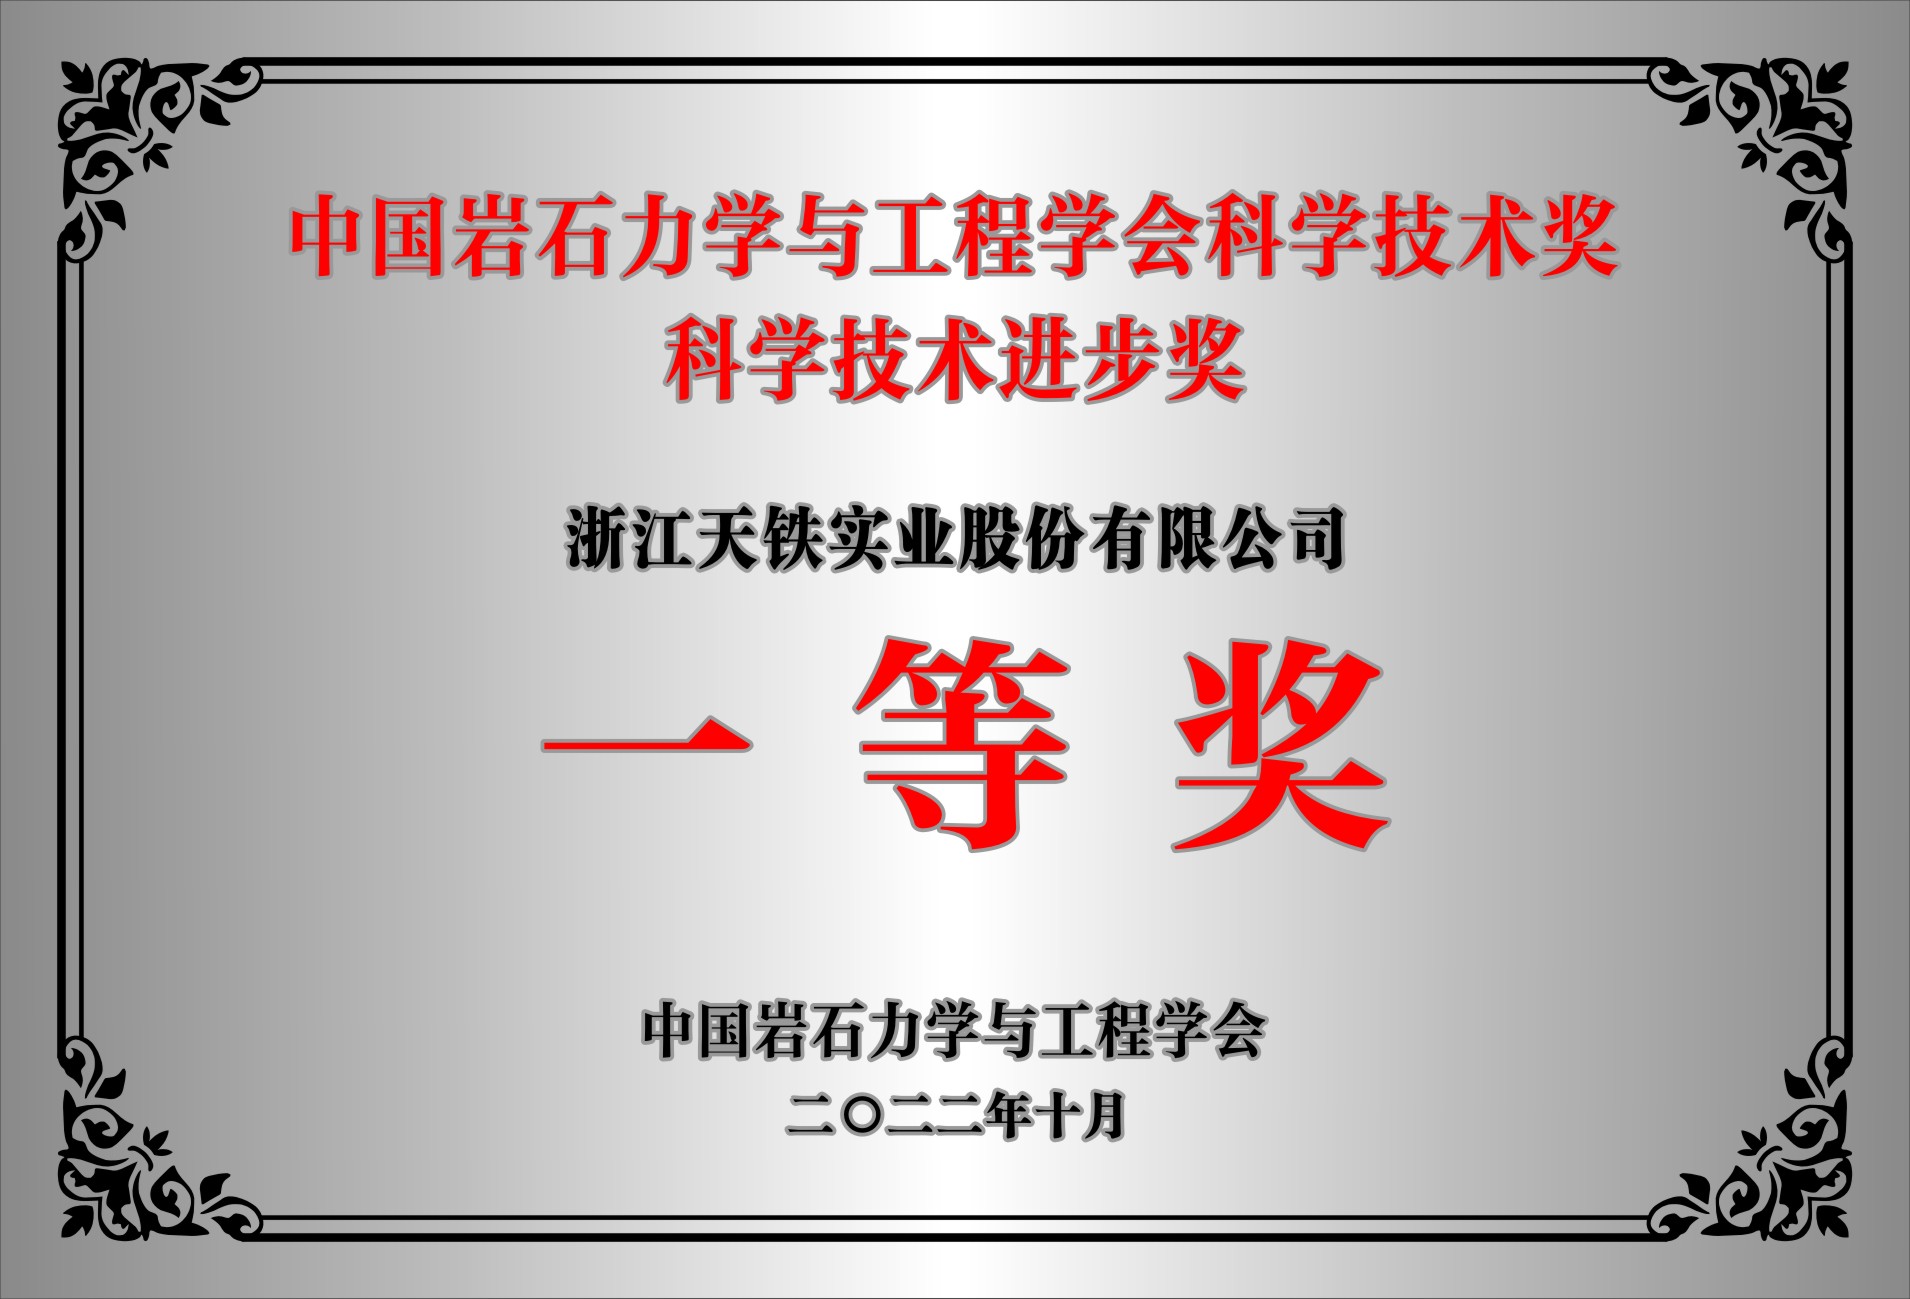 中国岩石力学与工程学会科学技术奖 科学技术进步奖 一等奖